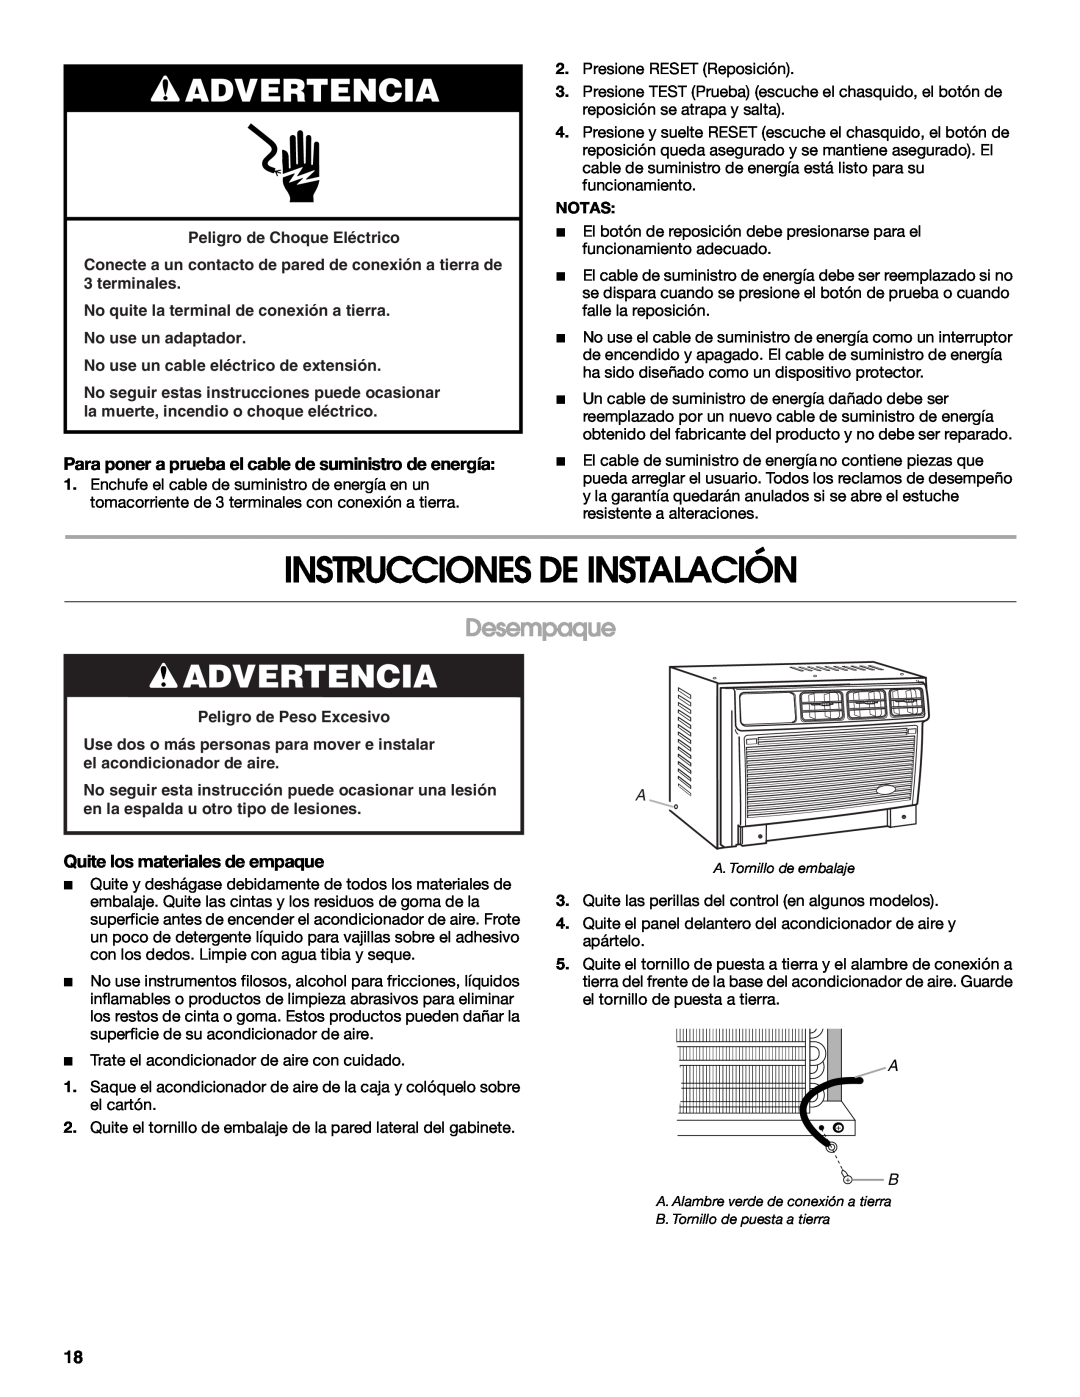 Whirlpool ACE082XR0 manual Instrucciones De Instalación, Desempaque, Quite los materiales de empaque, Advertencia 